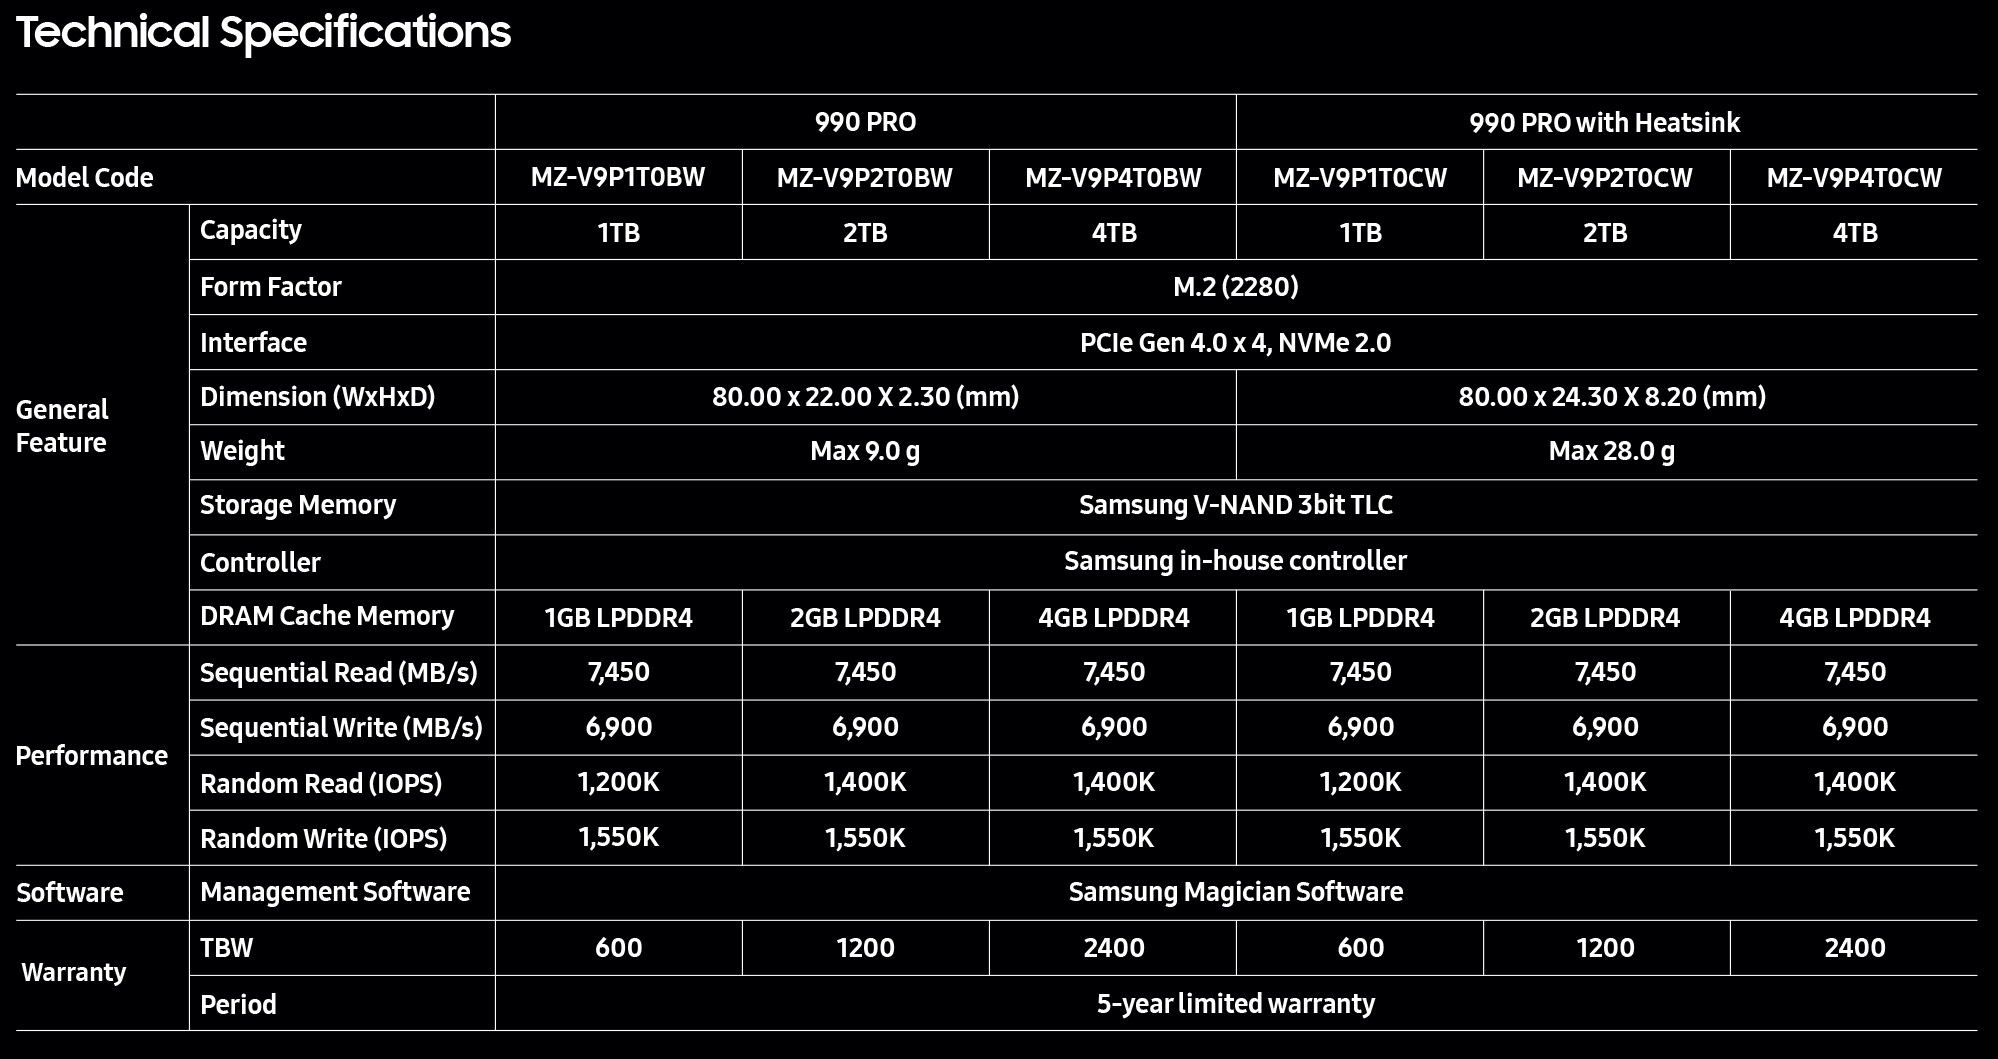 Promo Samsung : -30% sur le SSD 990 Pro 4To, c'est du jamais vu et